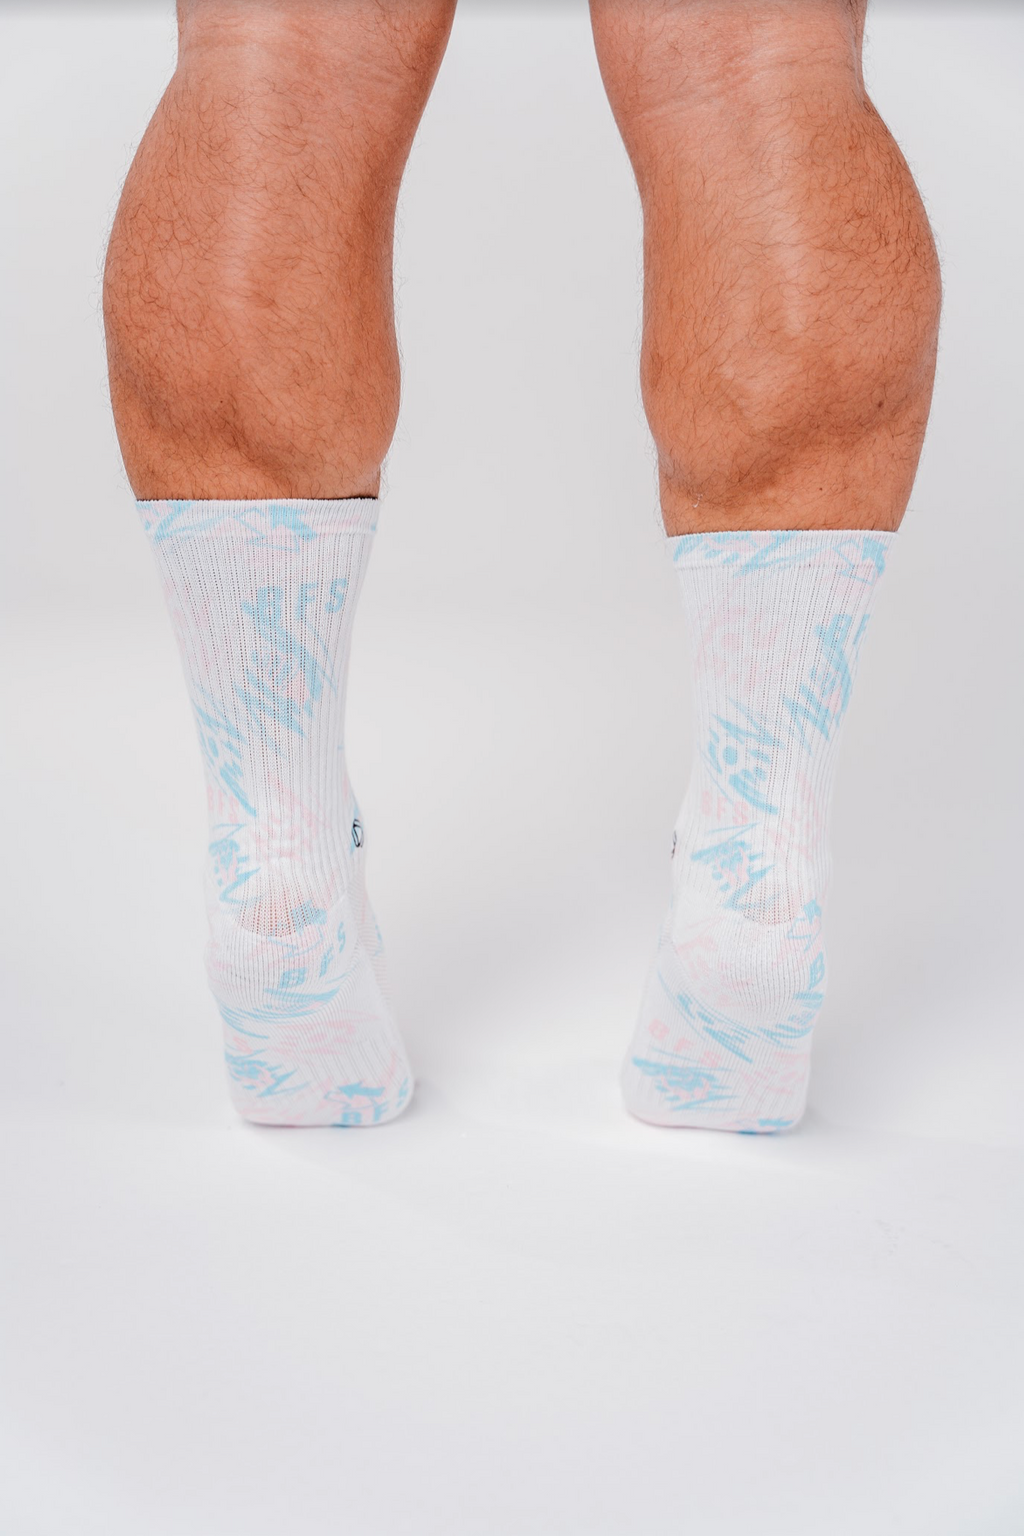 Baller Socks - Pink/Blue